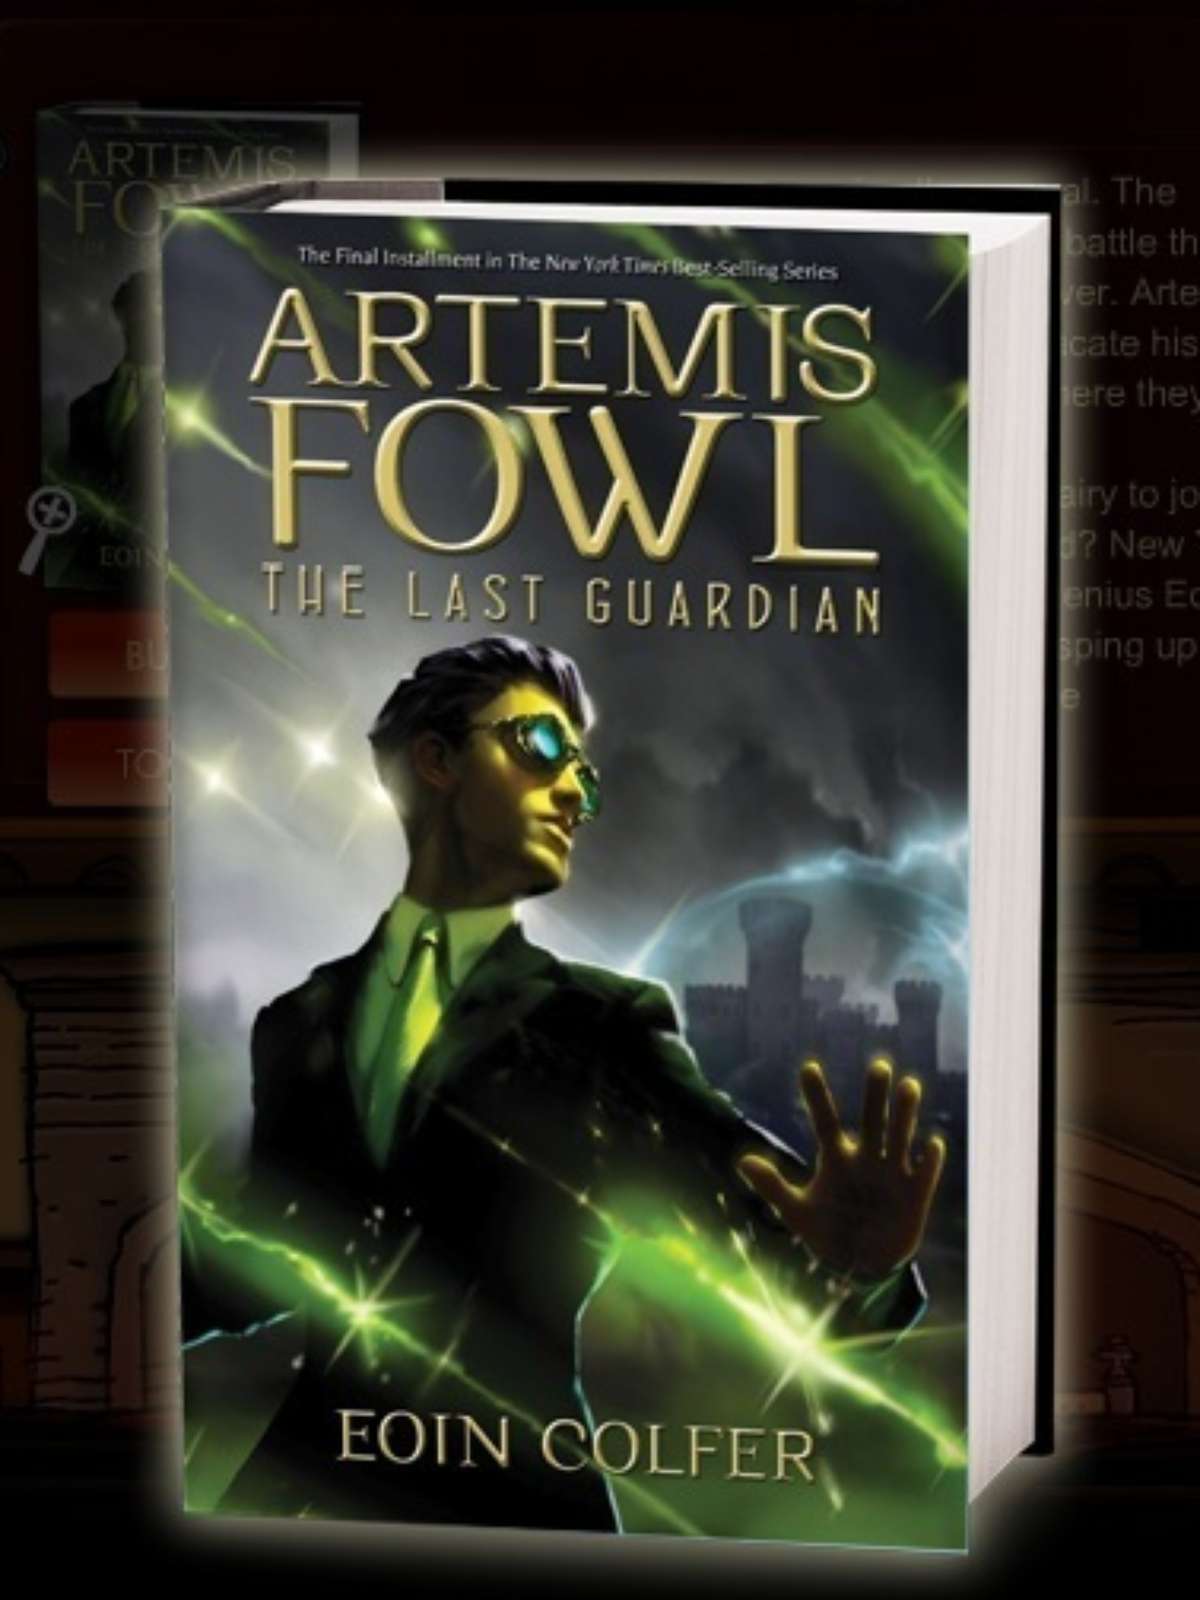 Personagem Artemis Fowl saltará dos livros para as telas